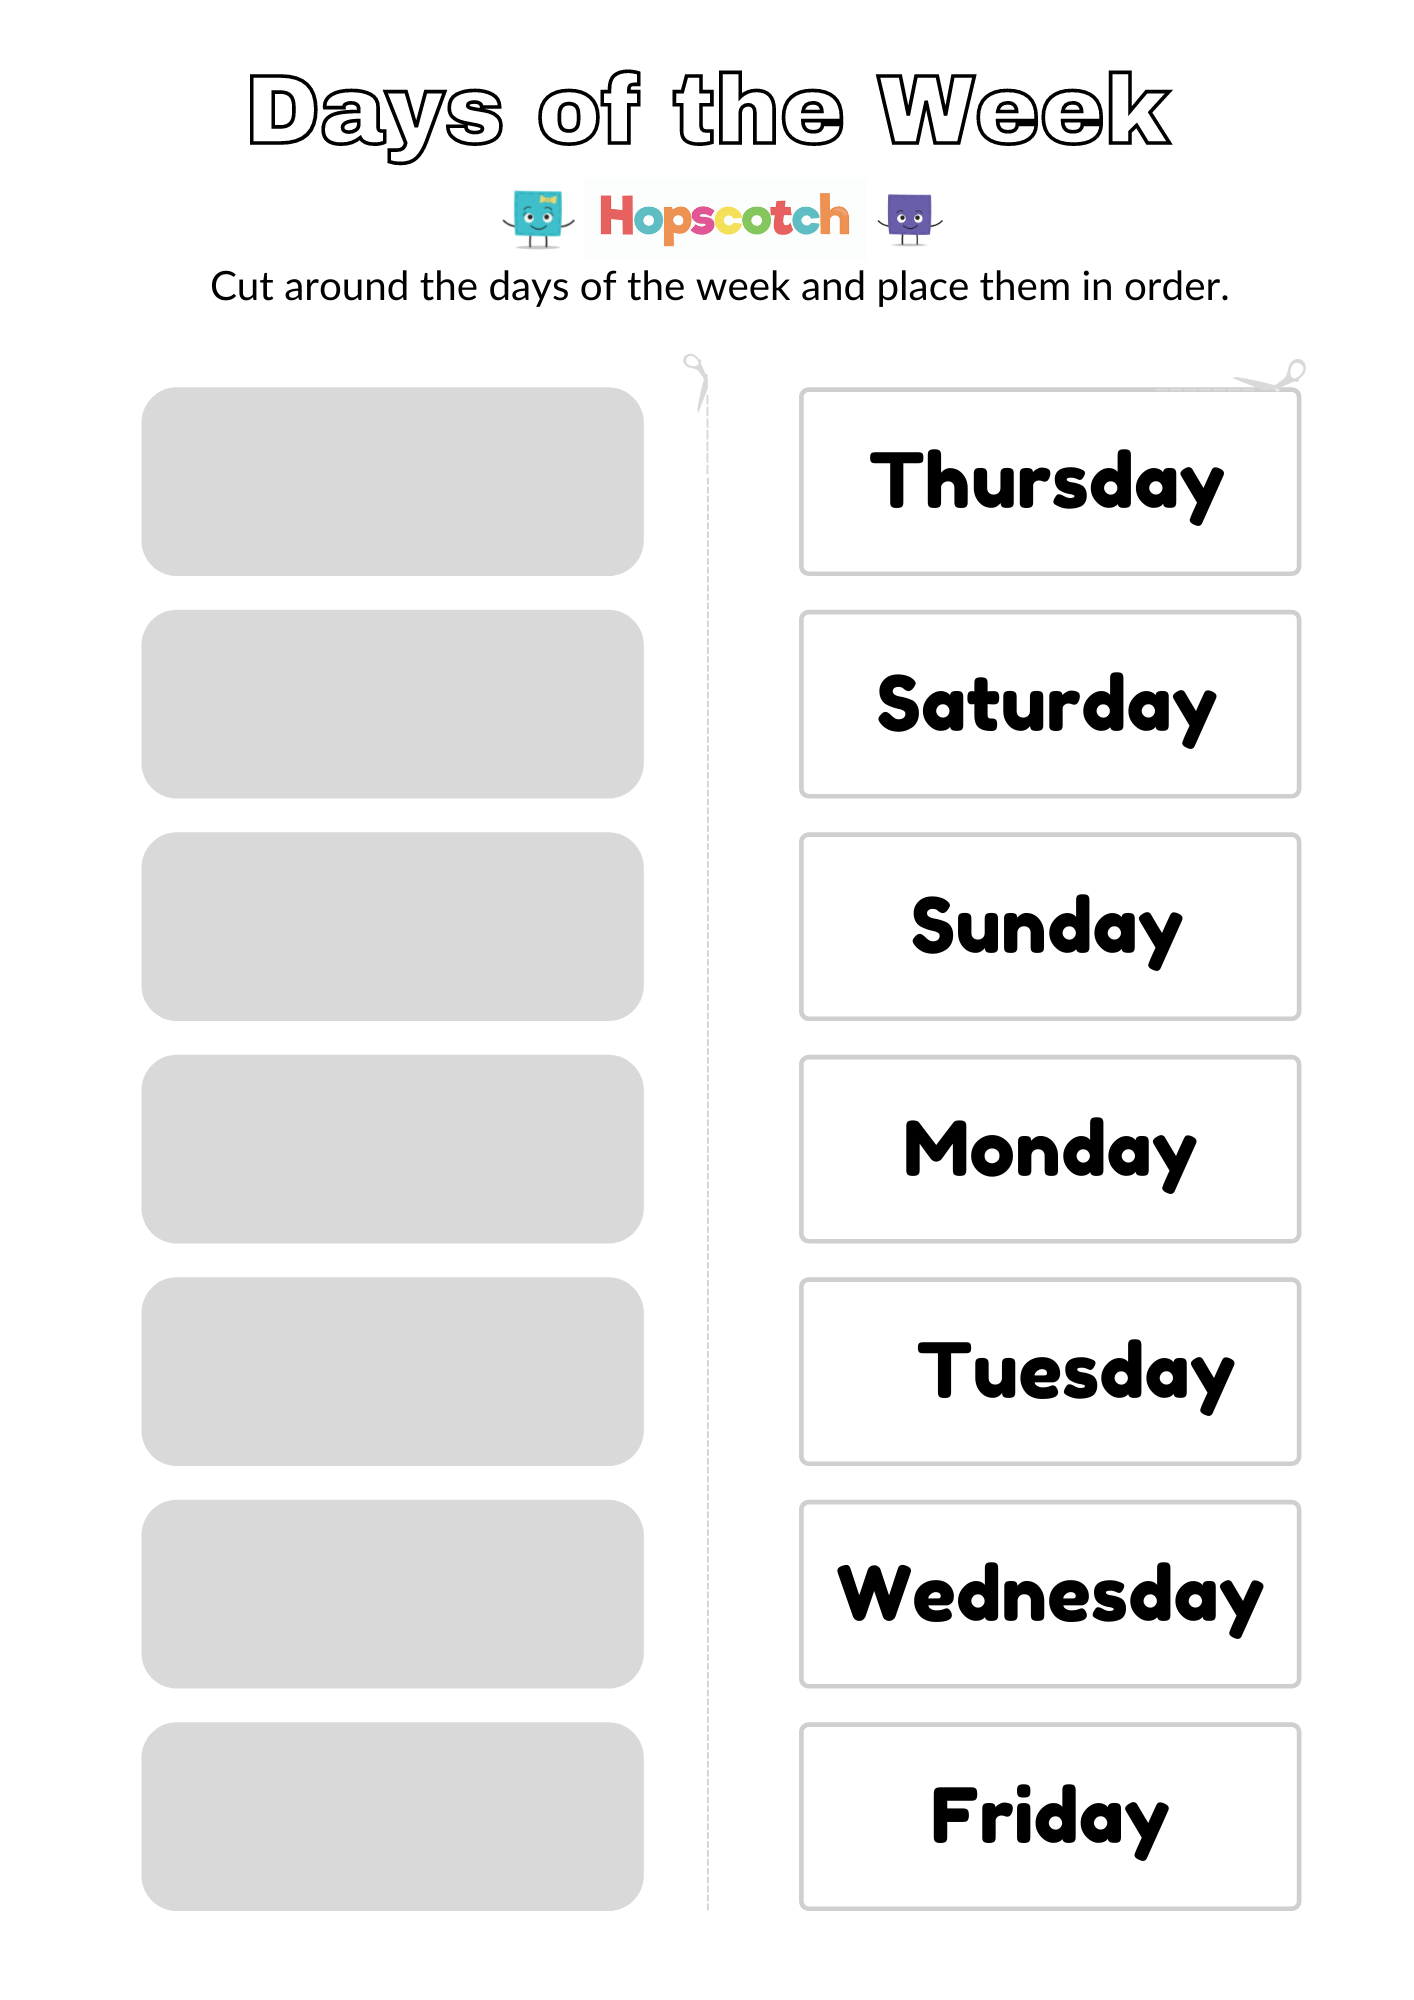 free-printable-days-of-the-week-display-free-days-of-the-week